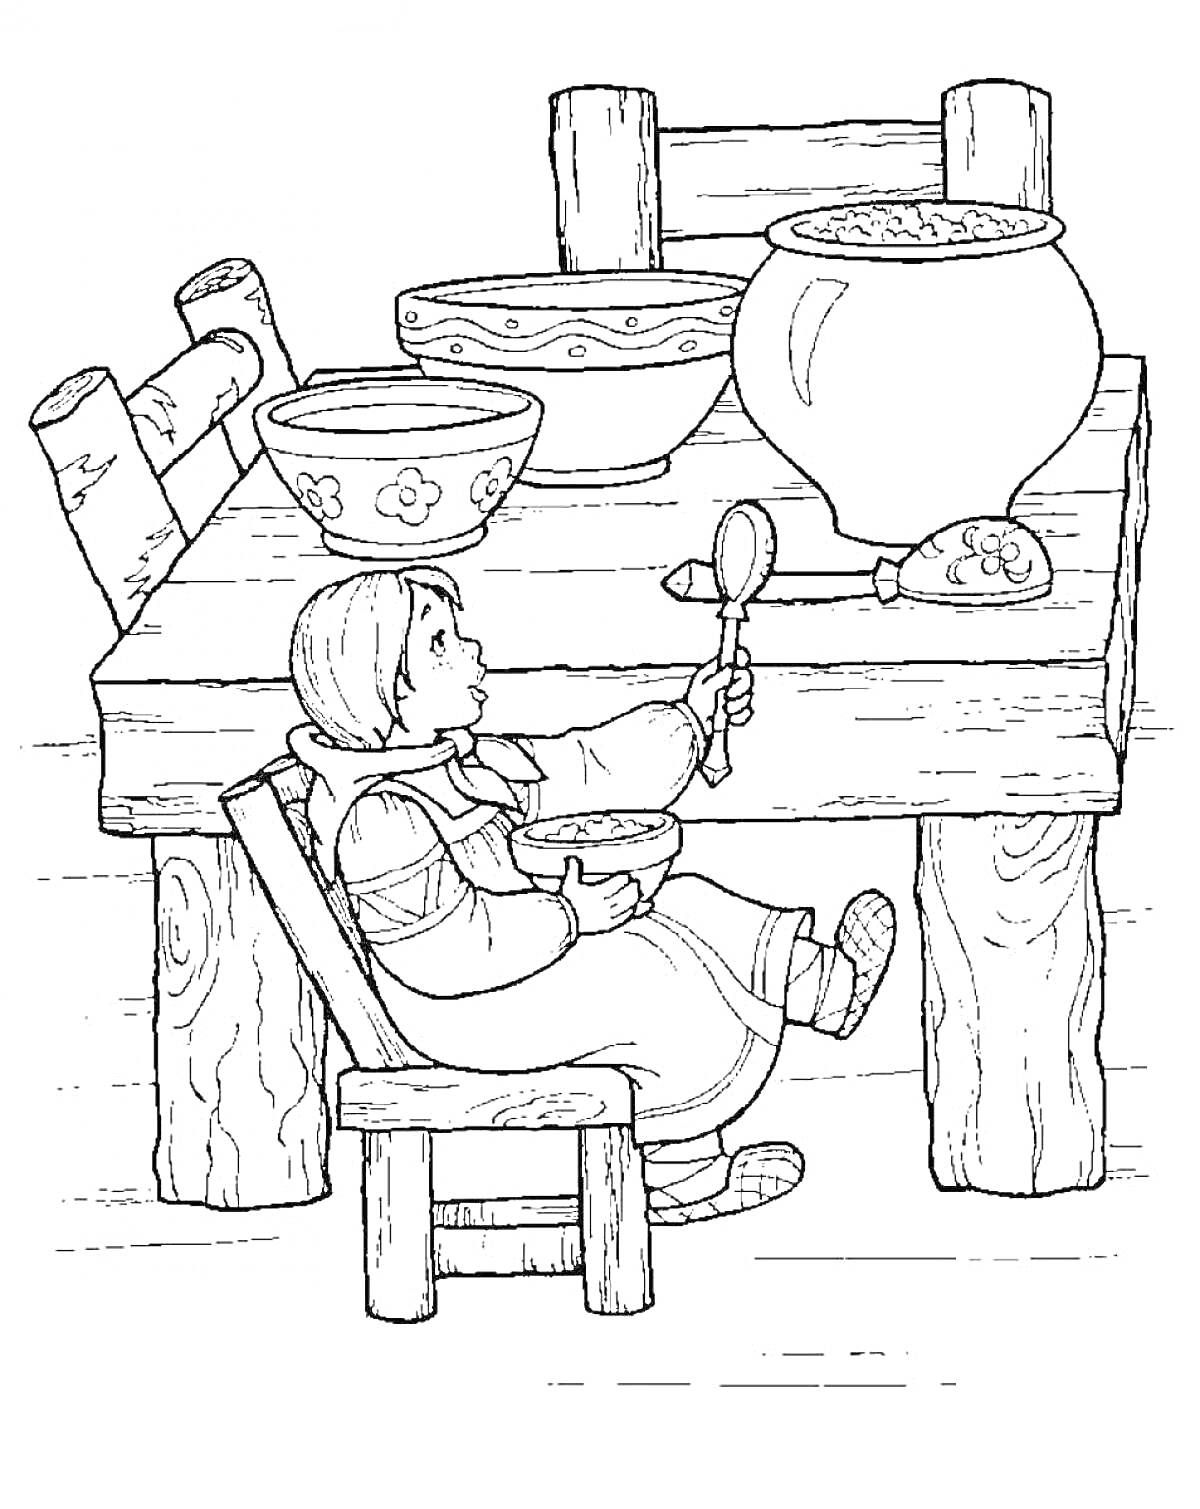 Девочка сидит за столом и ест из миски, на столе стоят несколько мисок и большая кастрюля